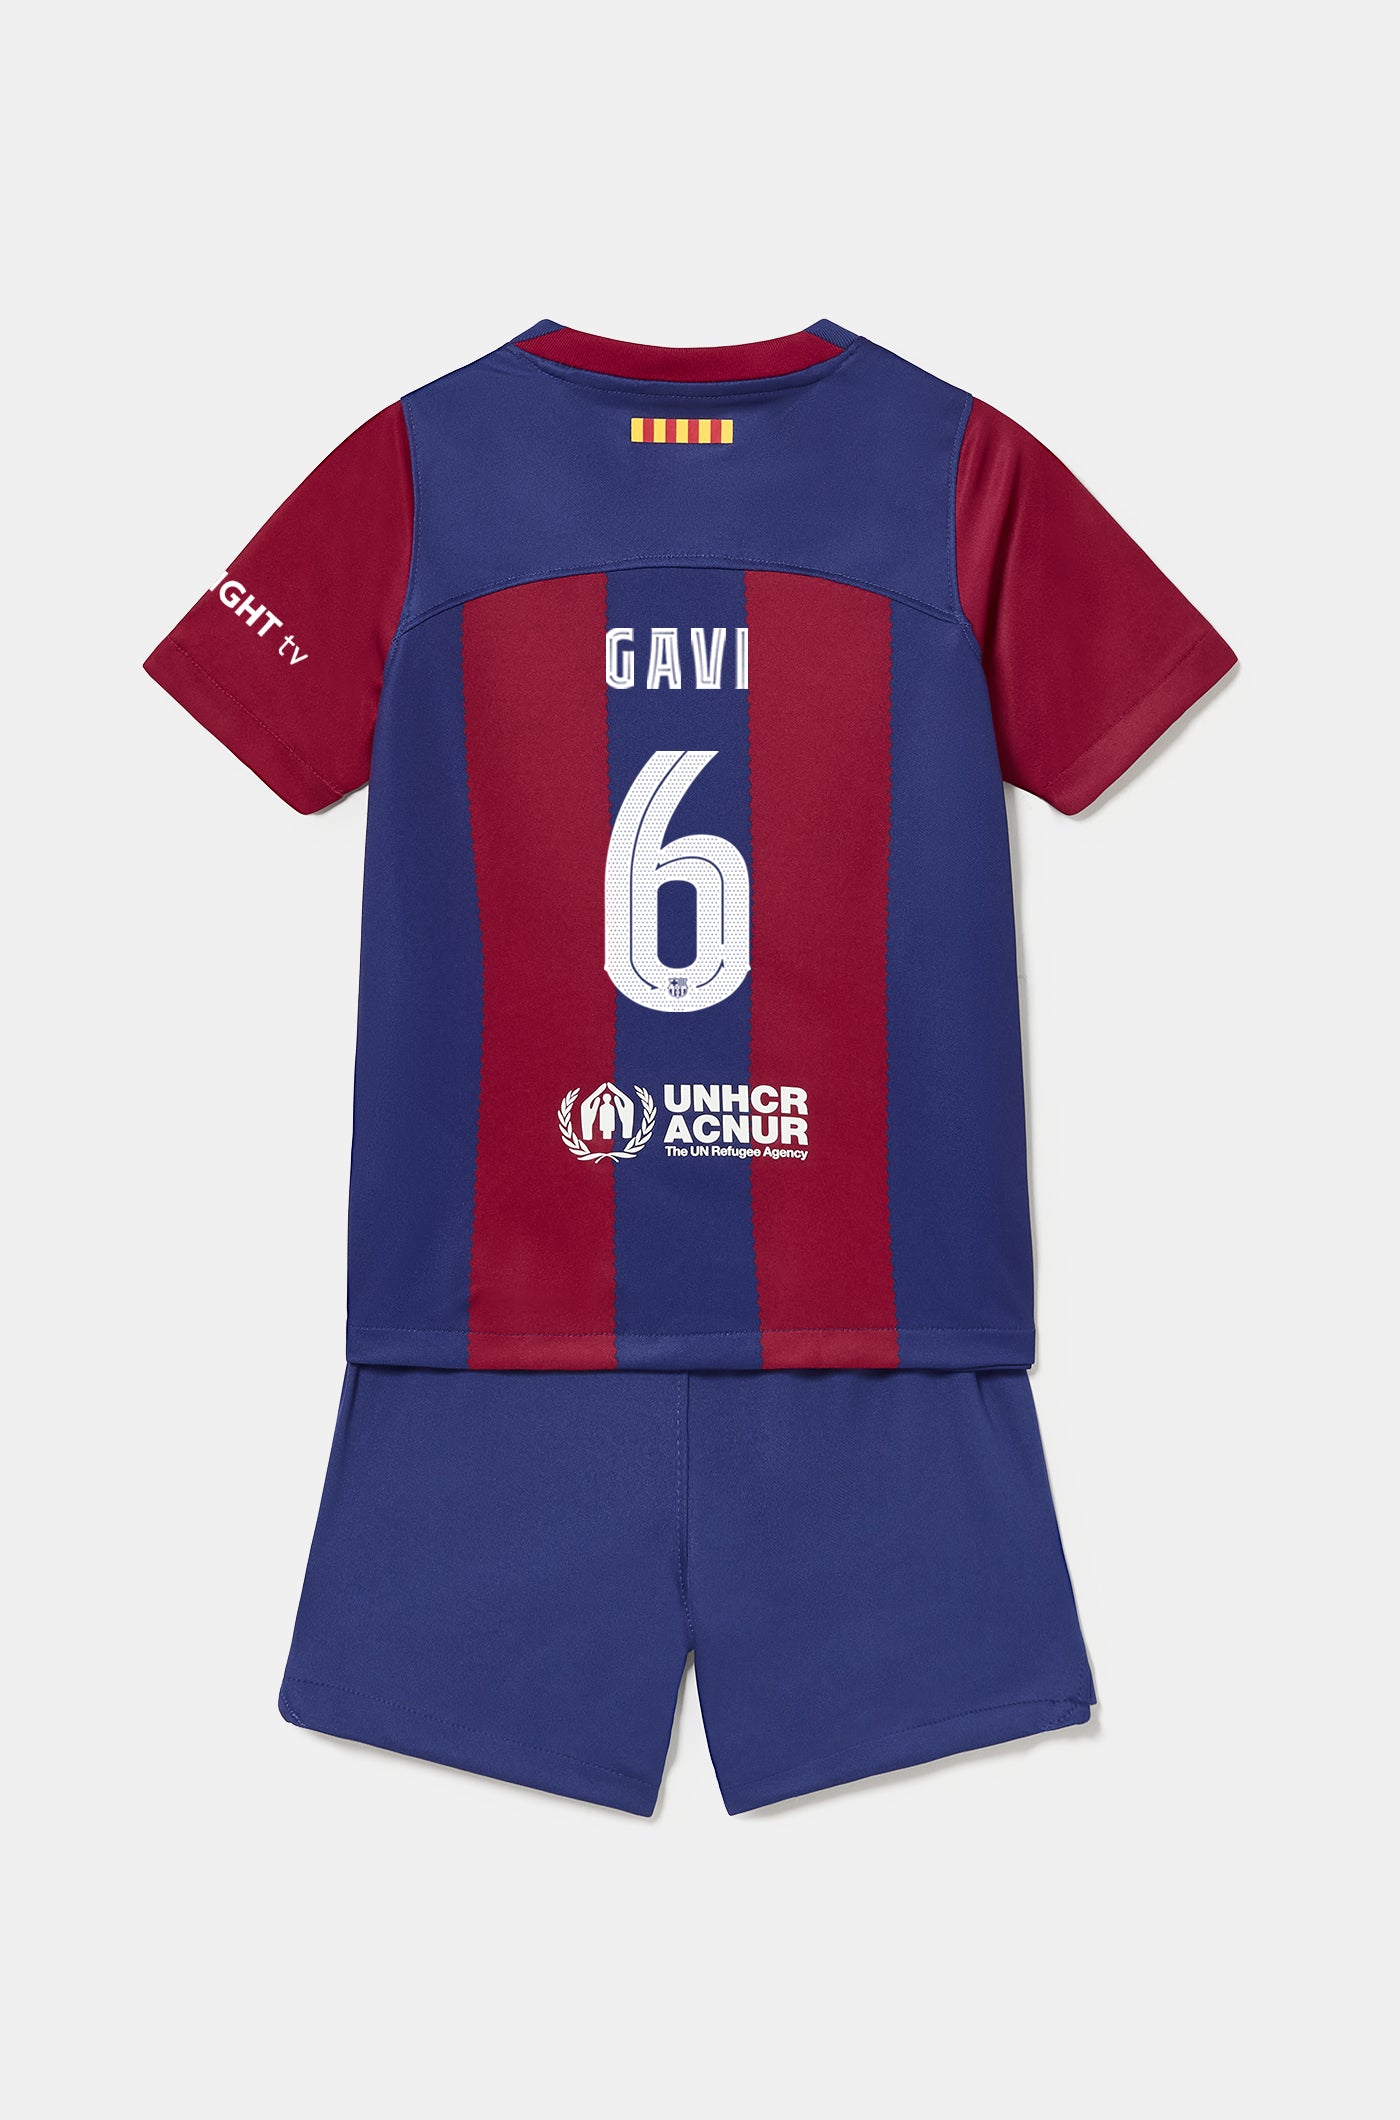 Conjunt primer equipament FC Barcelona 23/24 - Nen/a petit/a - GAVI